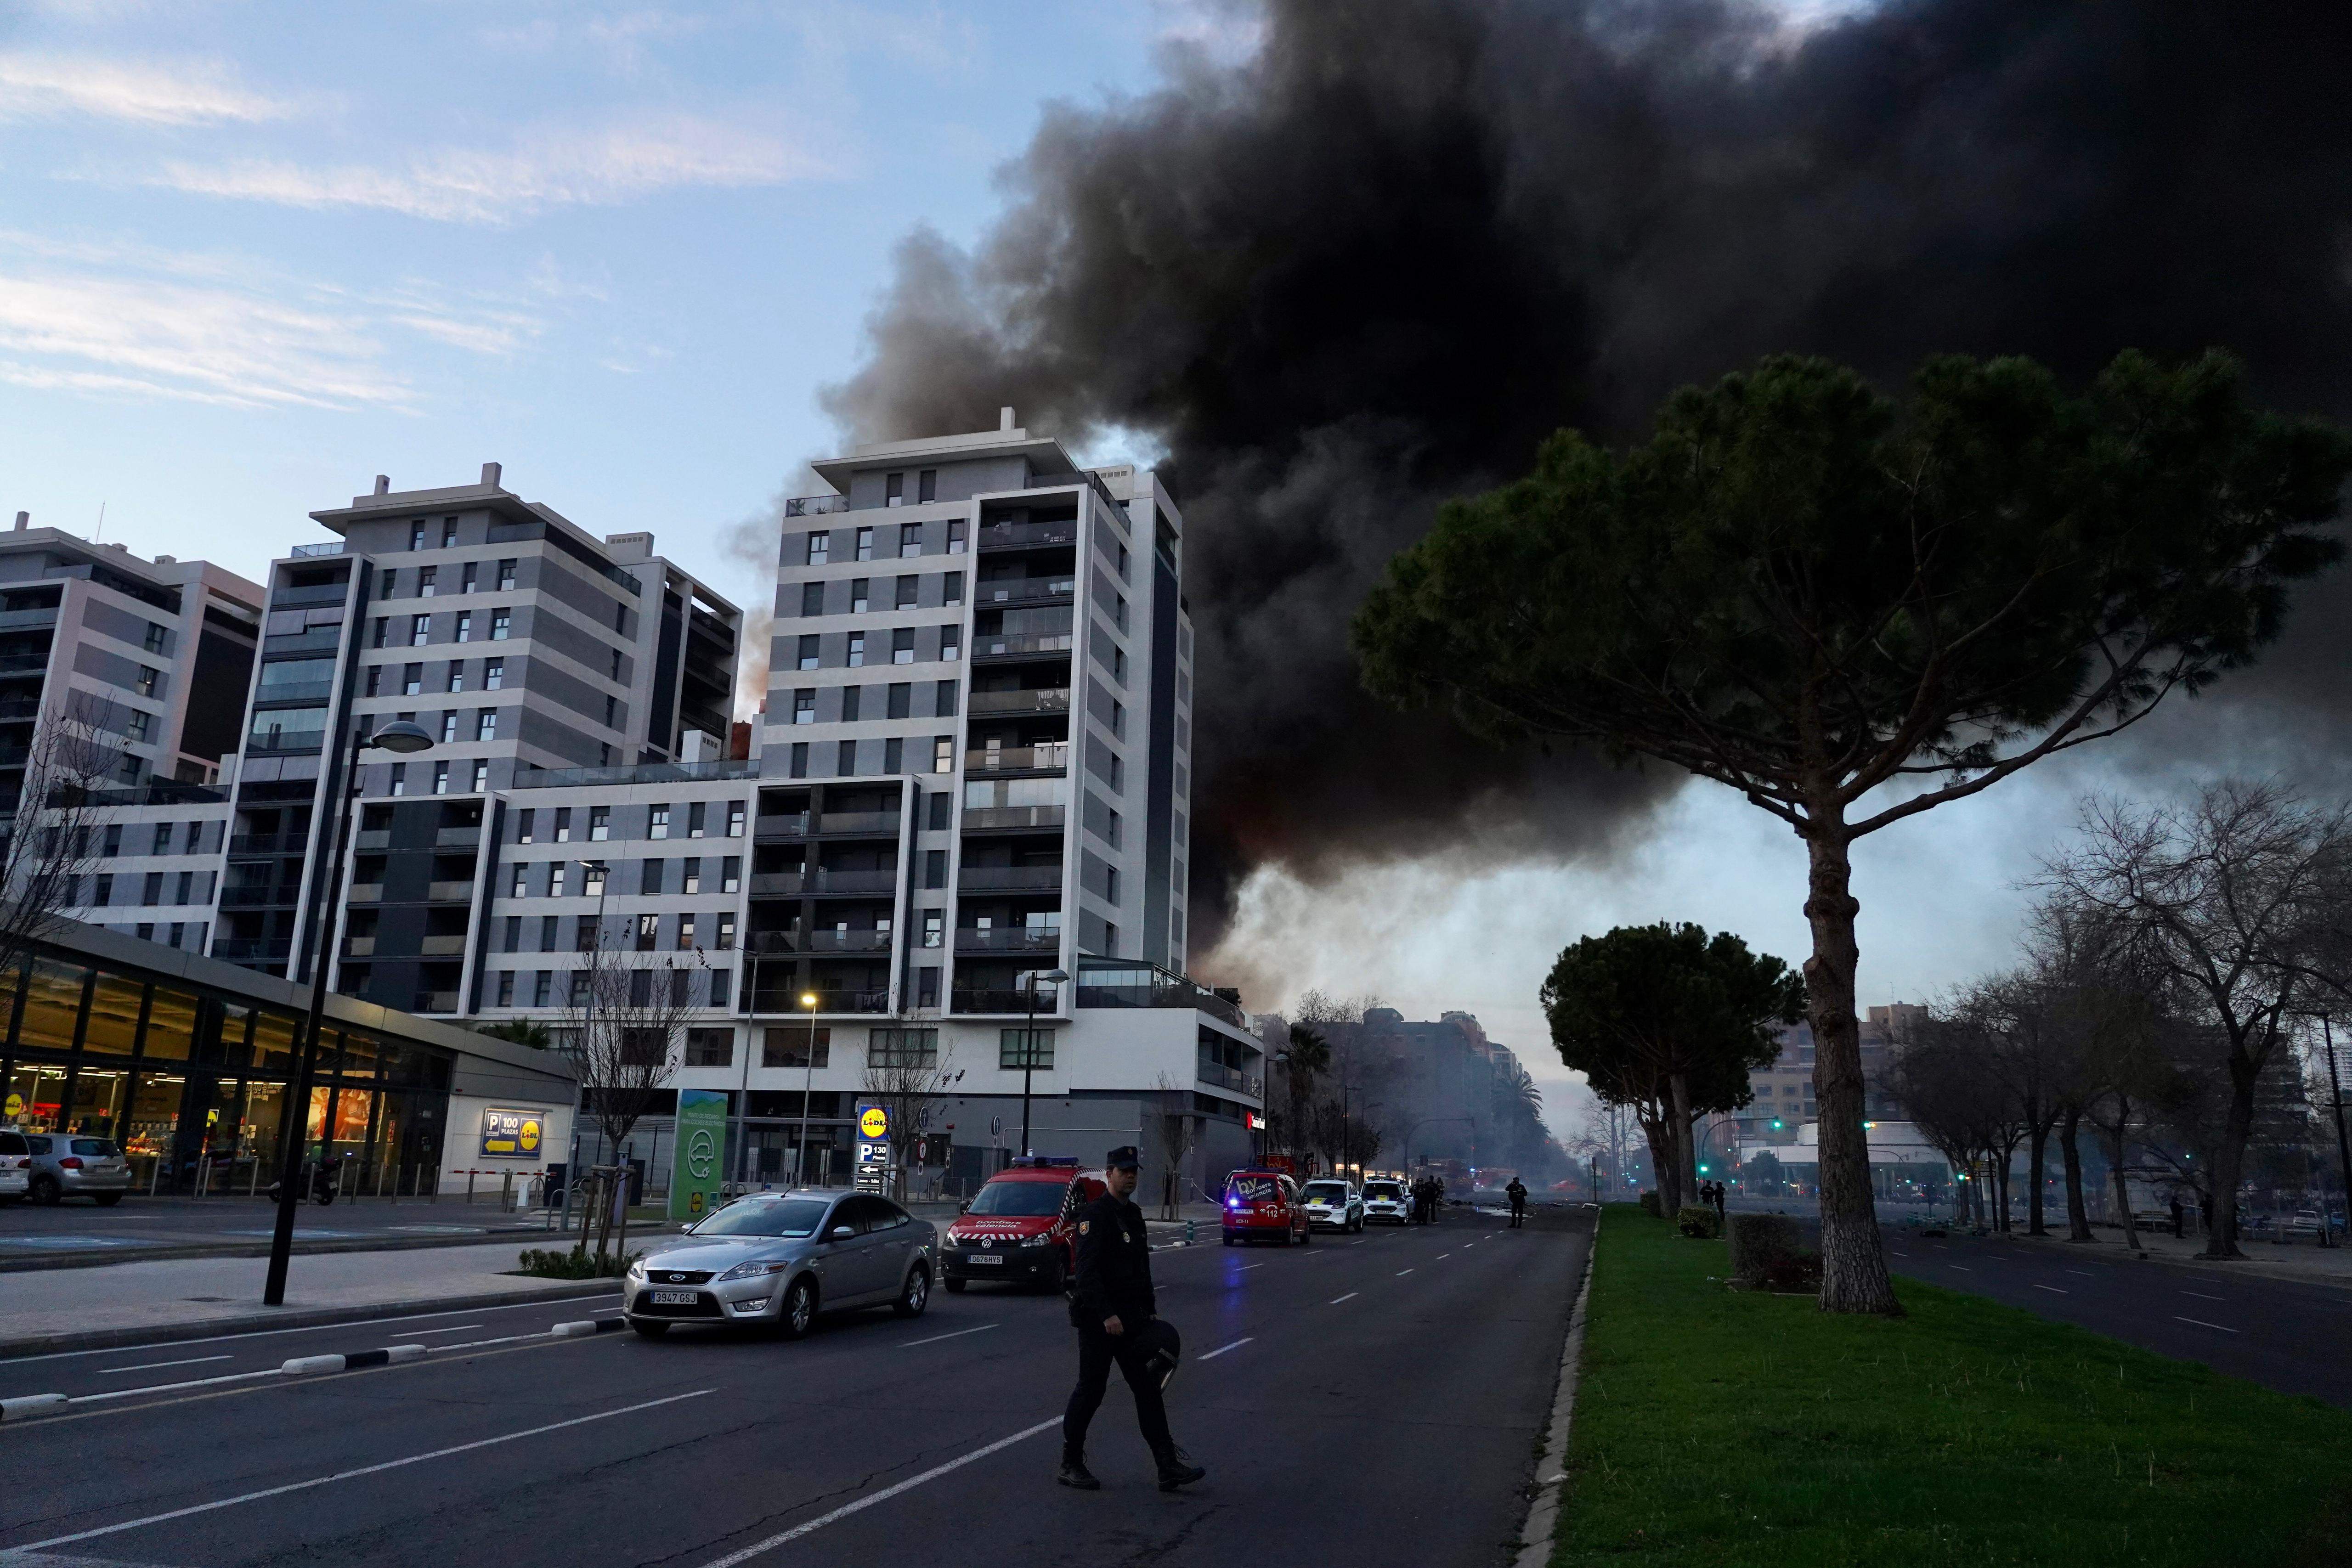 Què és el poliuretà, el material de la façana de l'edifici incendiat a València?